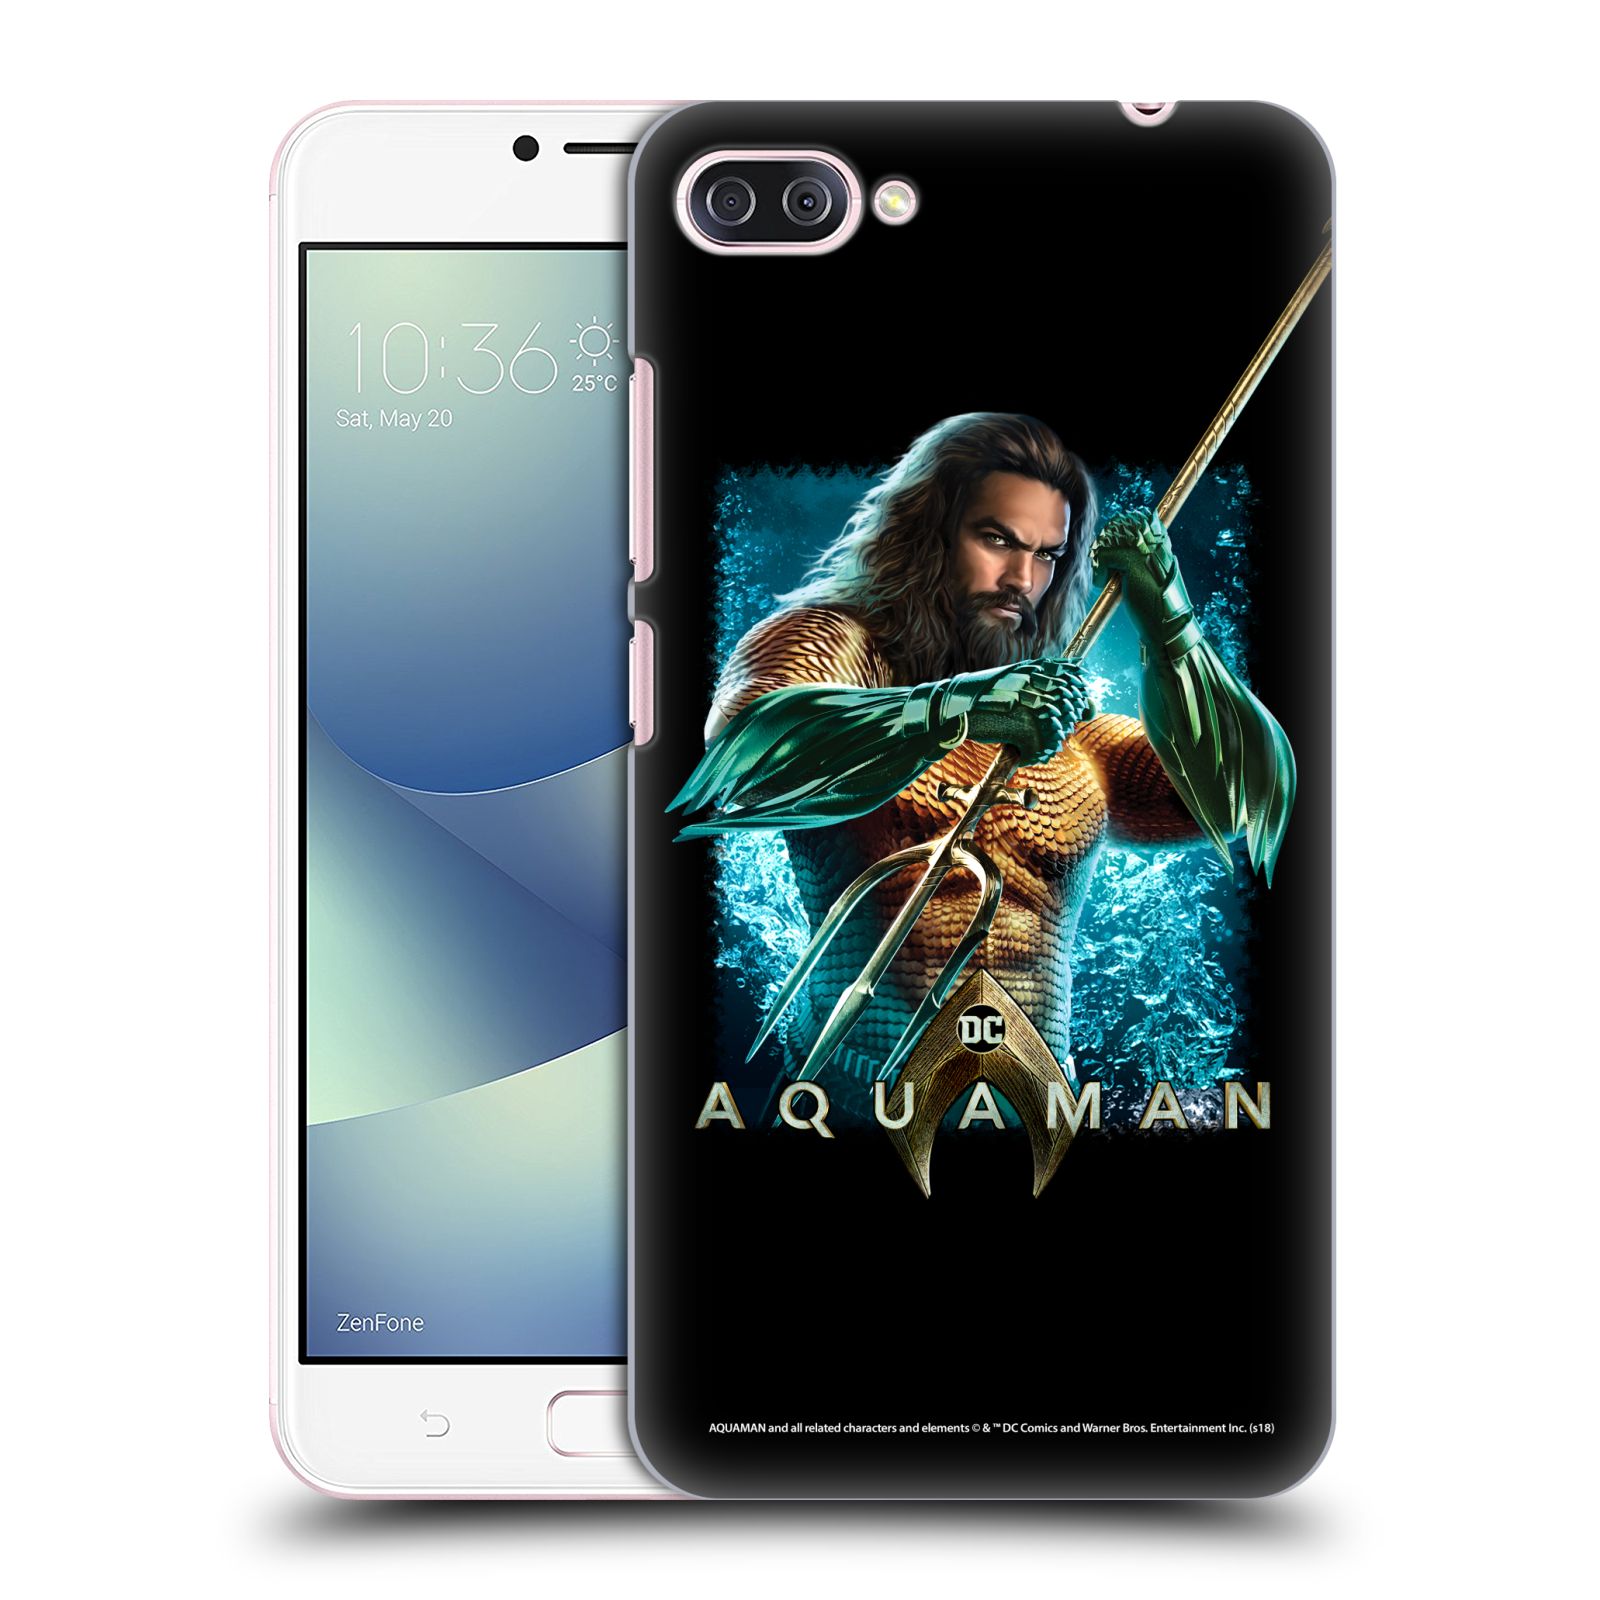 Pouzdro na mobil ASUS Zenfone 4 Max / 4 Max Pro (ZC554KL) - HEAD CASE - Aquaman bojová pozice